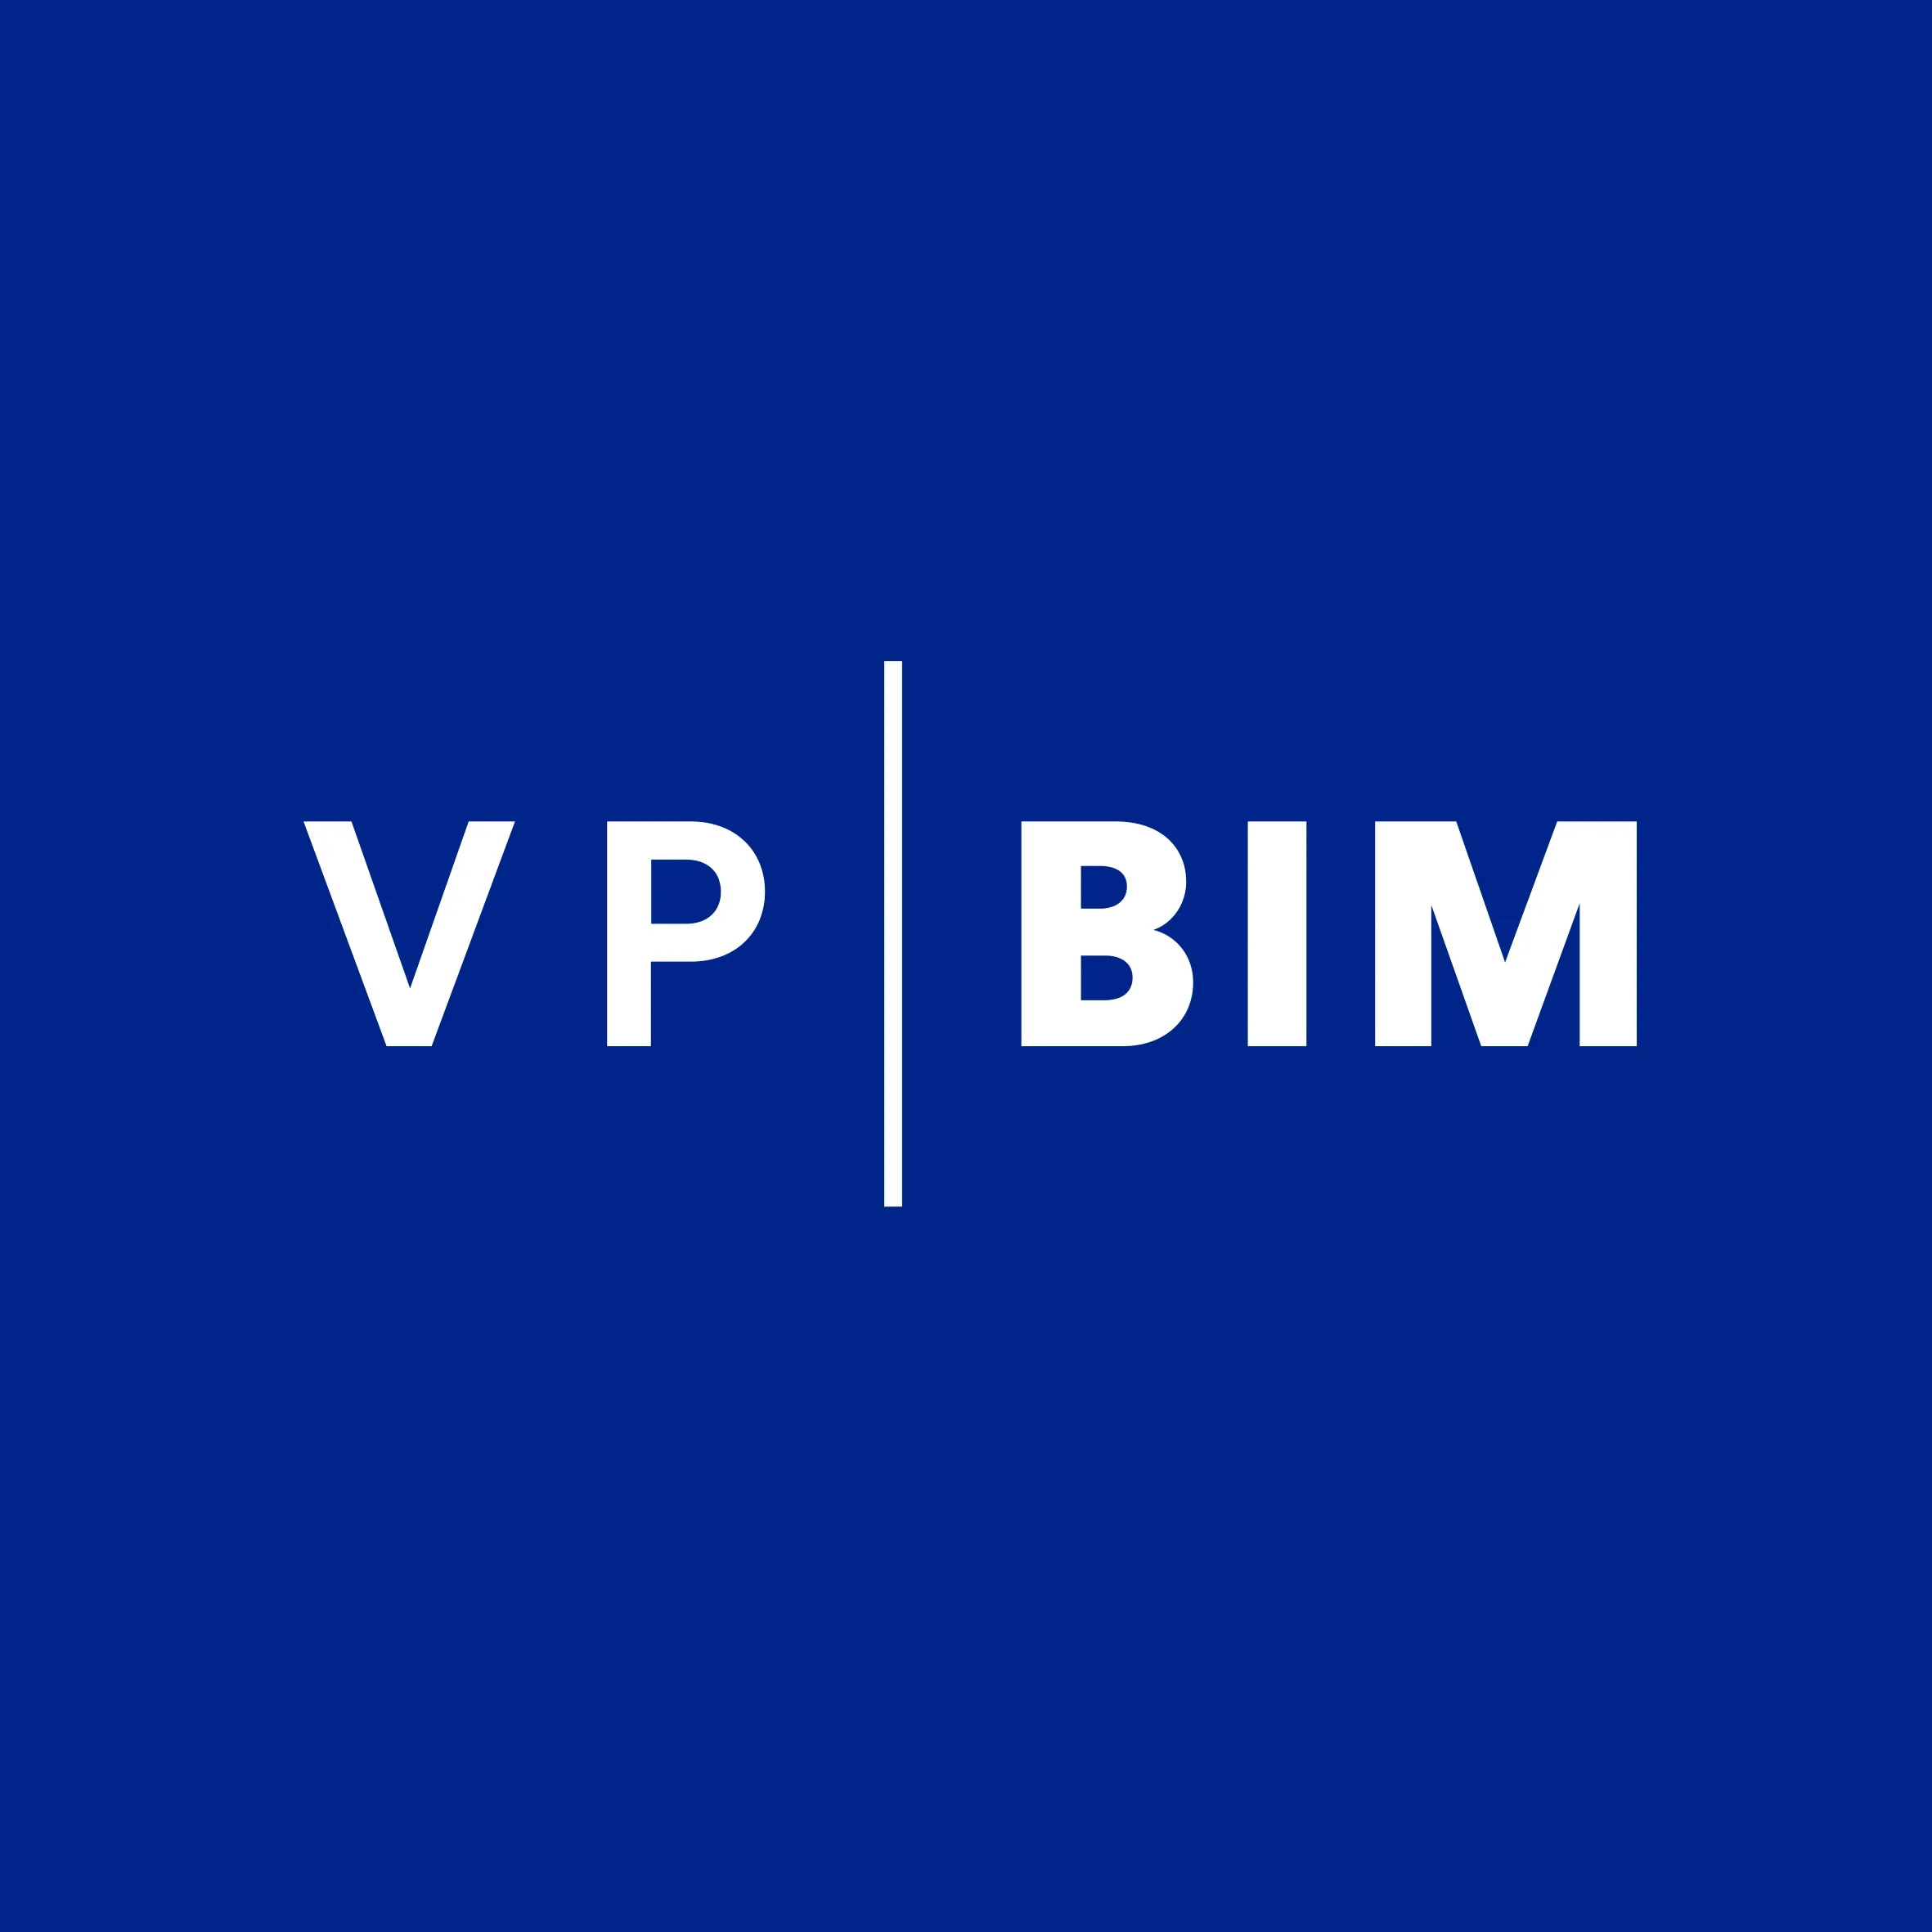 logo-VPBIM-fondbleu